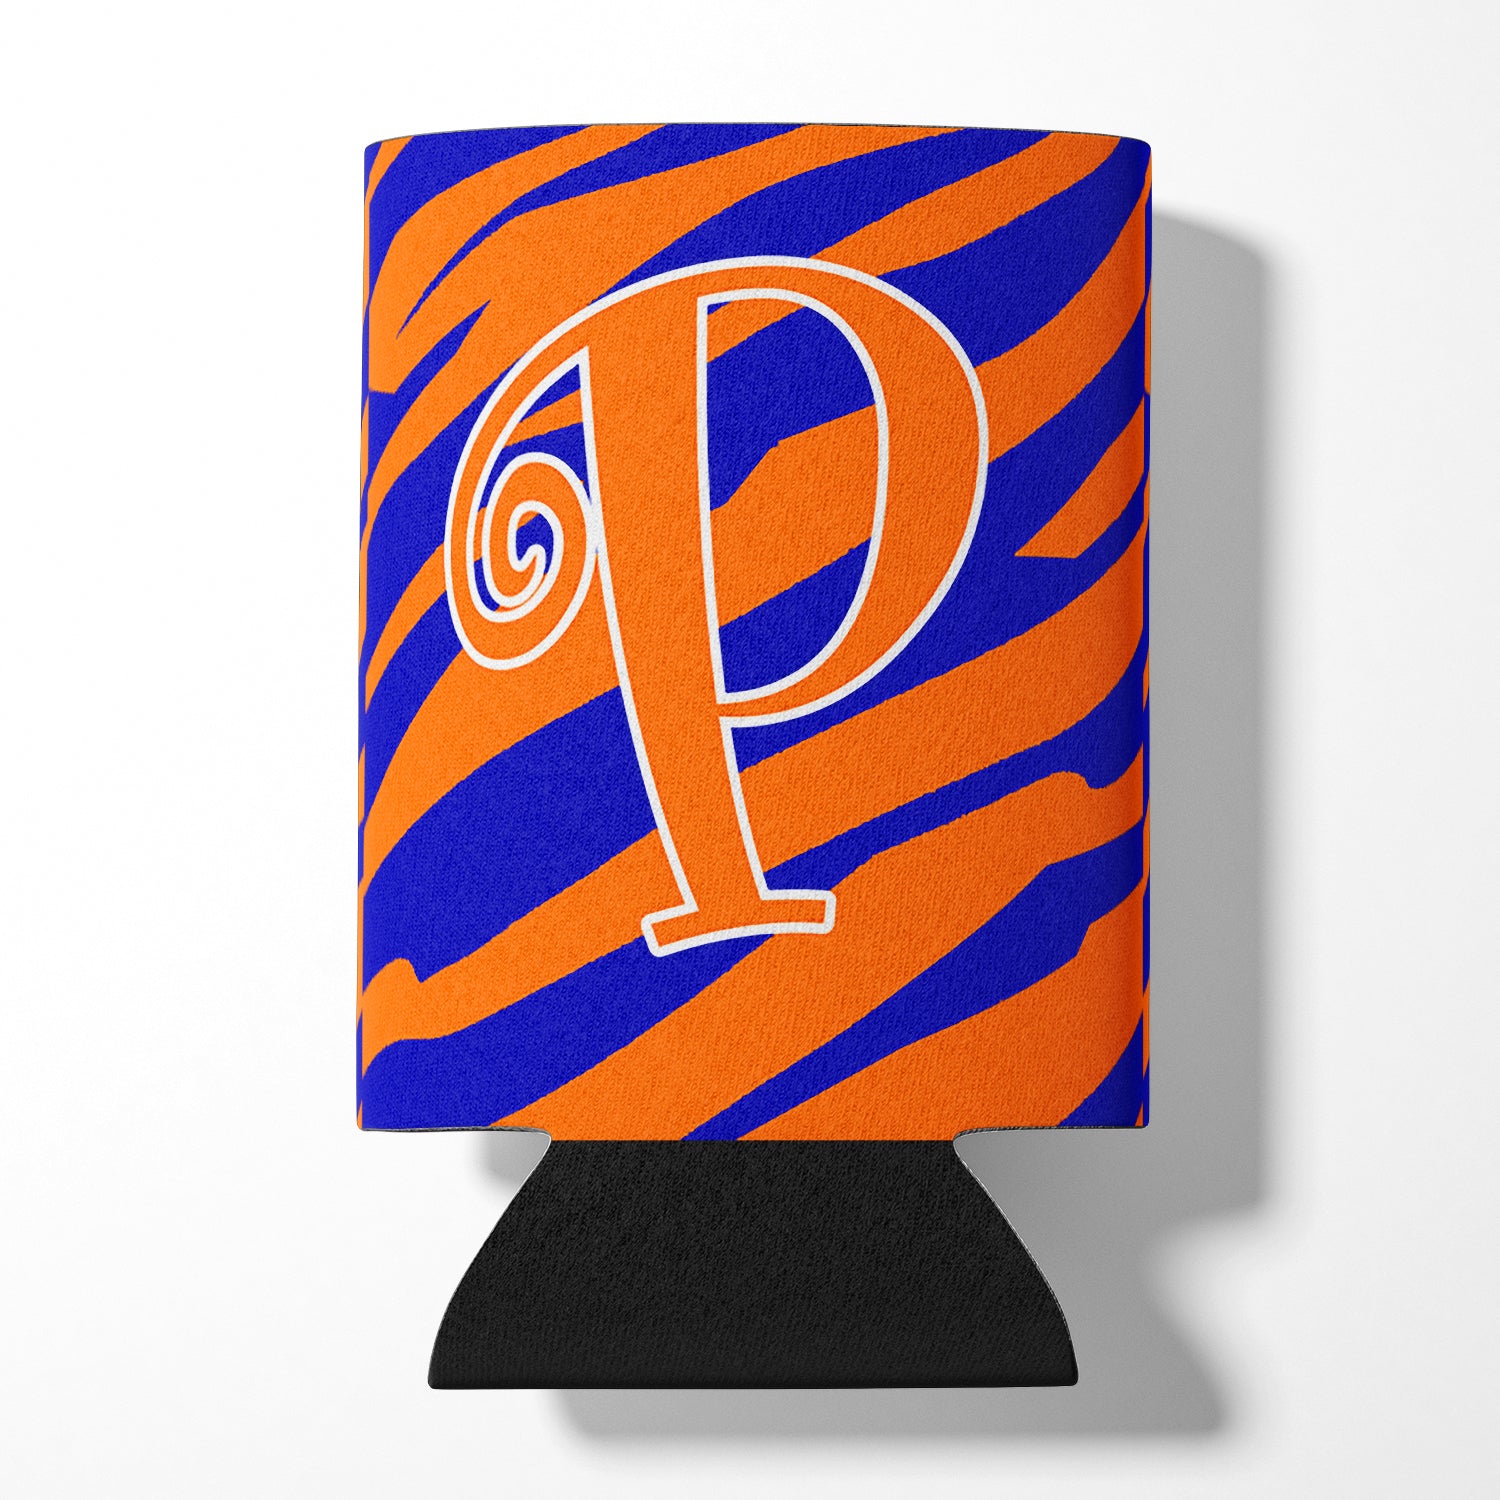 Letter P Initial Monogram - Tiger Stripe Blue and Orange Can Beverage Insulator Hugger.